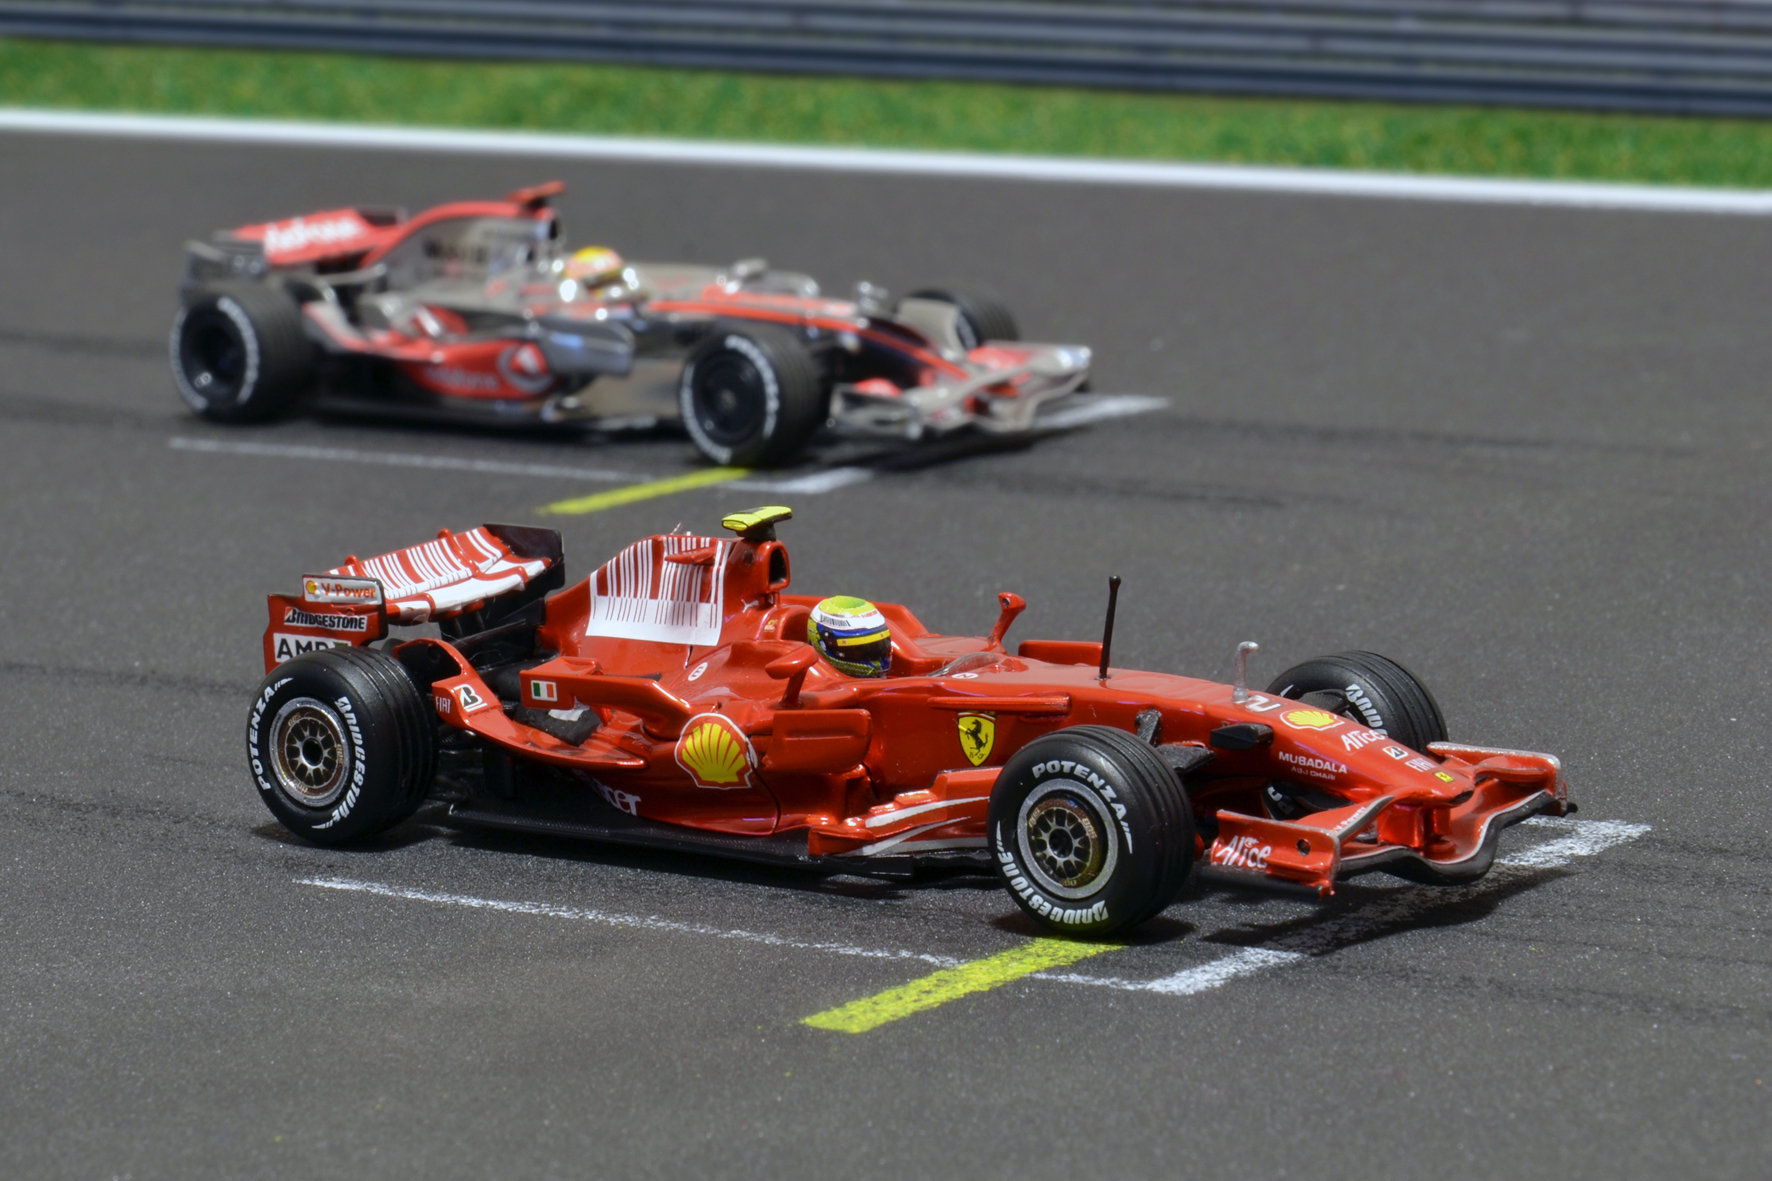 Ferrari F2008 Felipe Massa & McLaren MP4-23 Lewis Hamilton 2008 - Hot Wheels & Minichamps 1:43